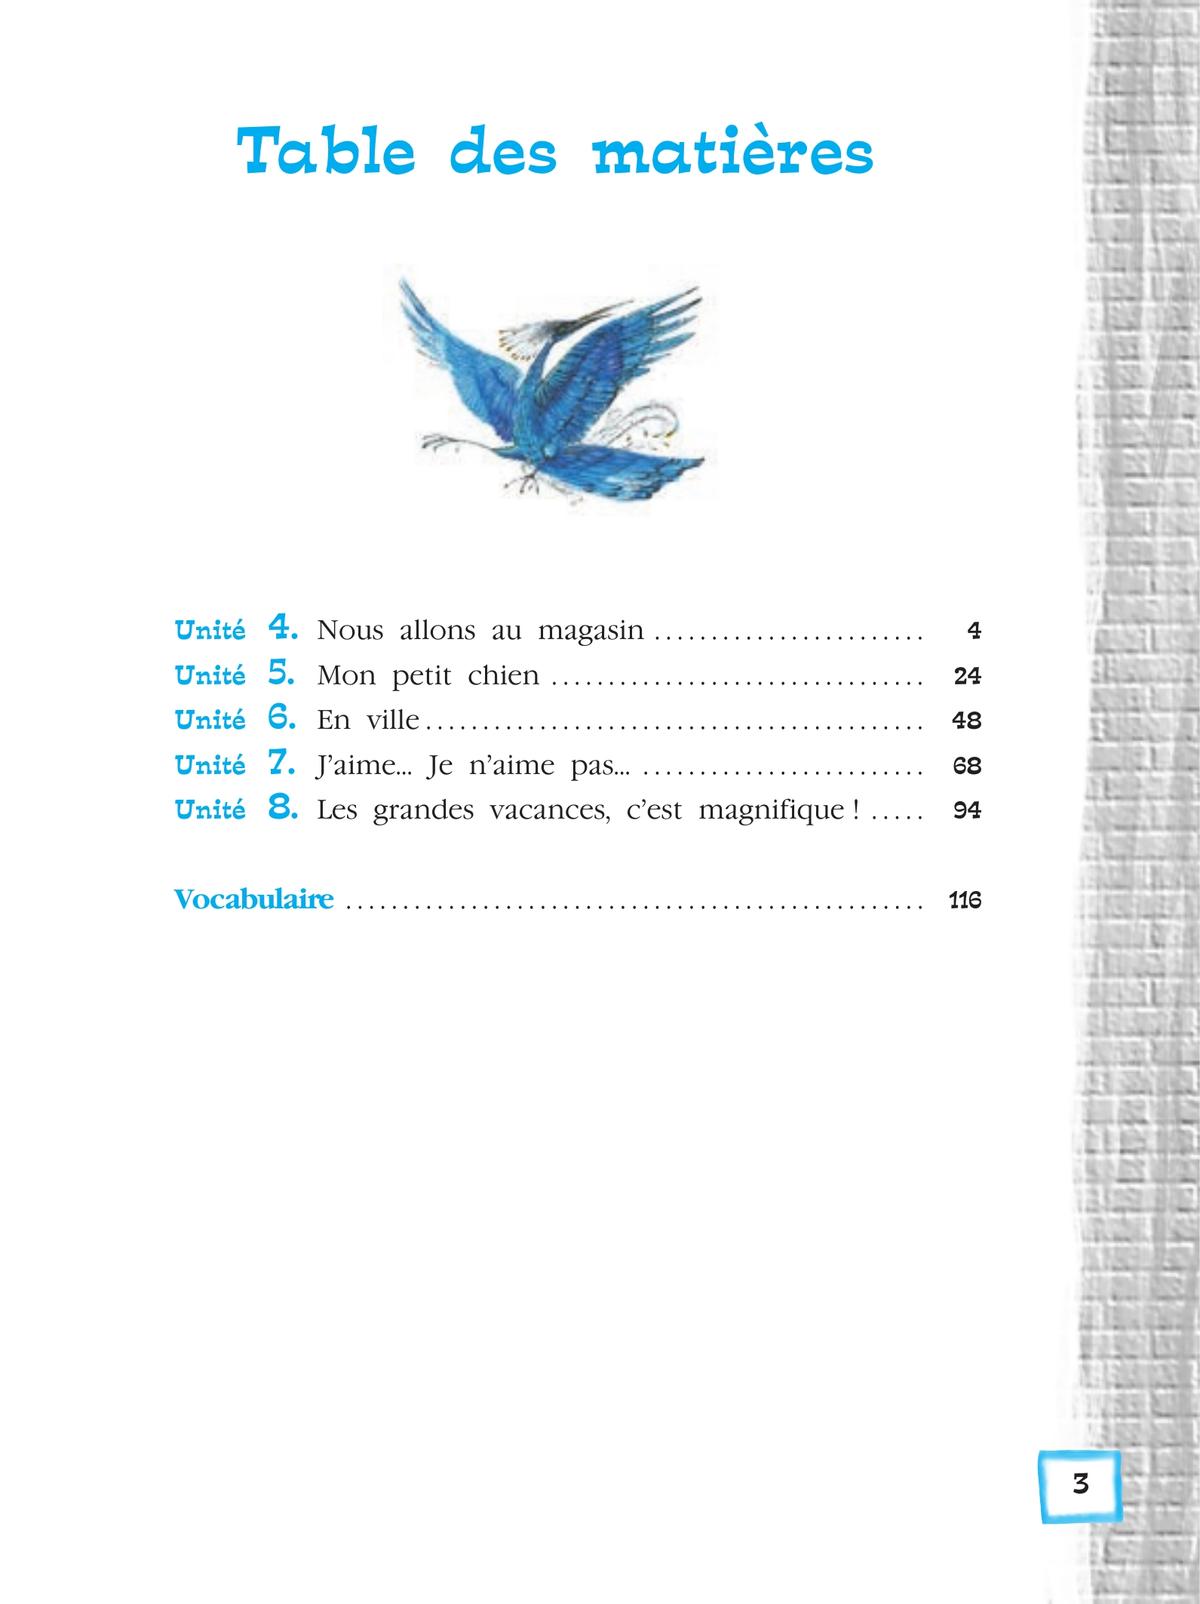 Ответы по французскому 5 класс синяя птица. Французский Береговская 5 кл. Французский язык 5 класс синяя птица 2 часть ответы. Французский тетрадь э.м.Береговская. 5 Класс / французский язык / l'oiseau bleu Береговская.